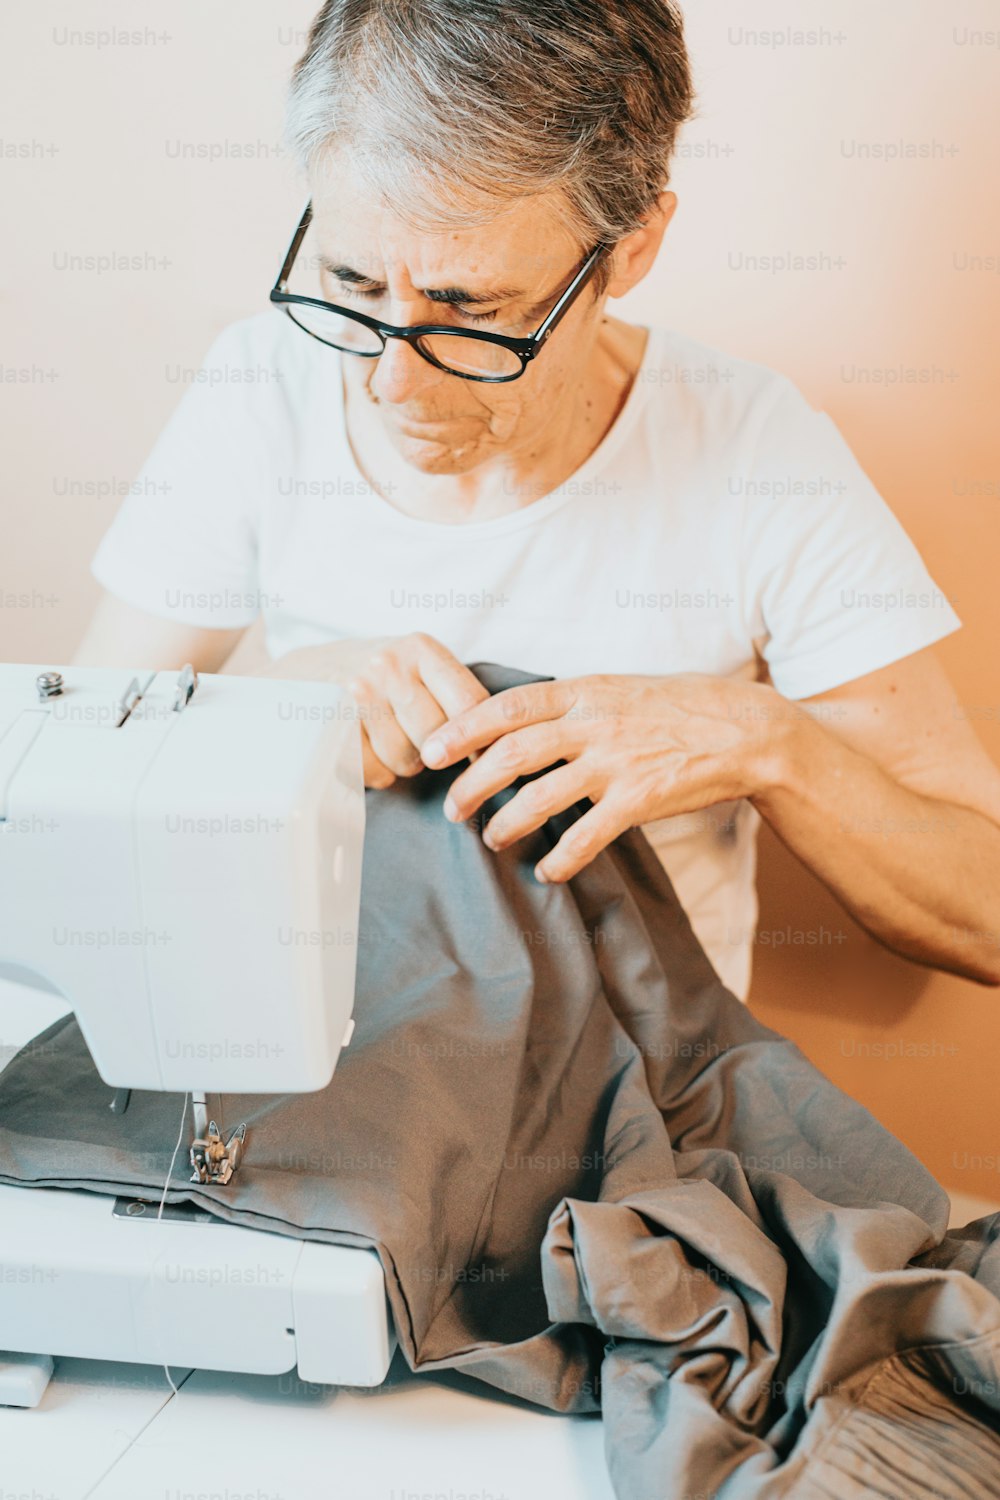 Un hombre está trabajando en una máquina de coser